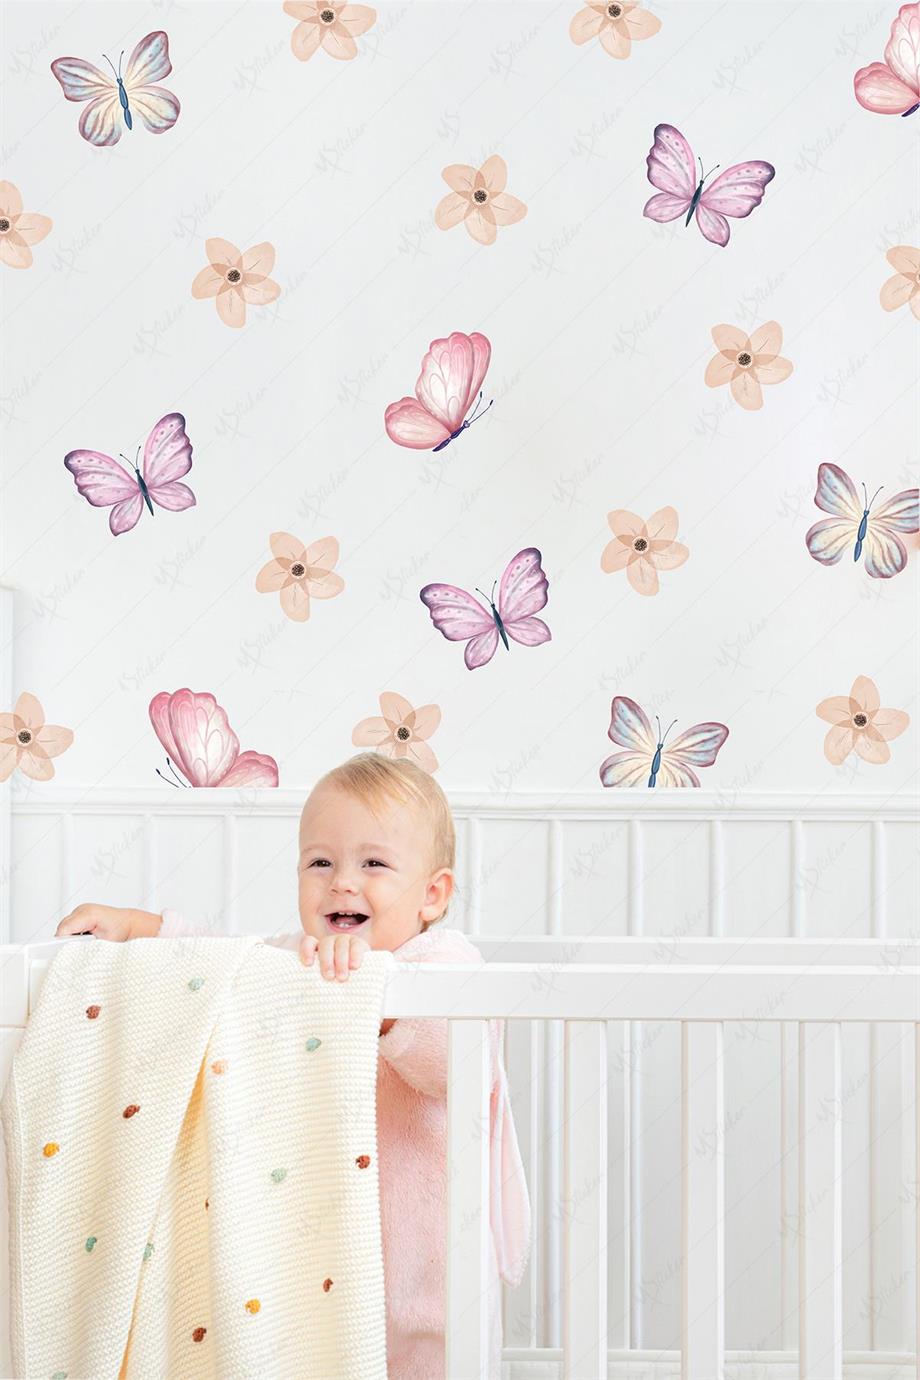 Soft Renklerde Kelebekler ve Çiçekler Çocuk Bebek Odası Cam Duvar Sticker  Seti